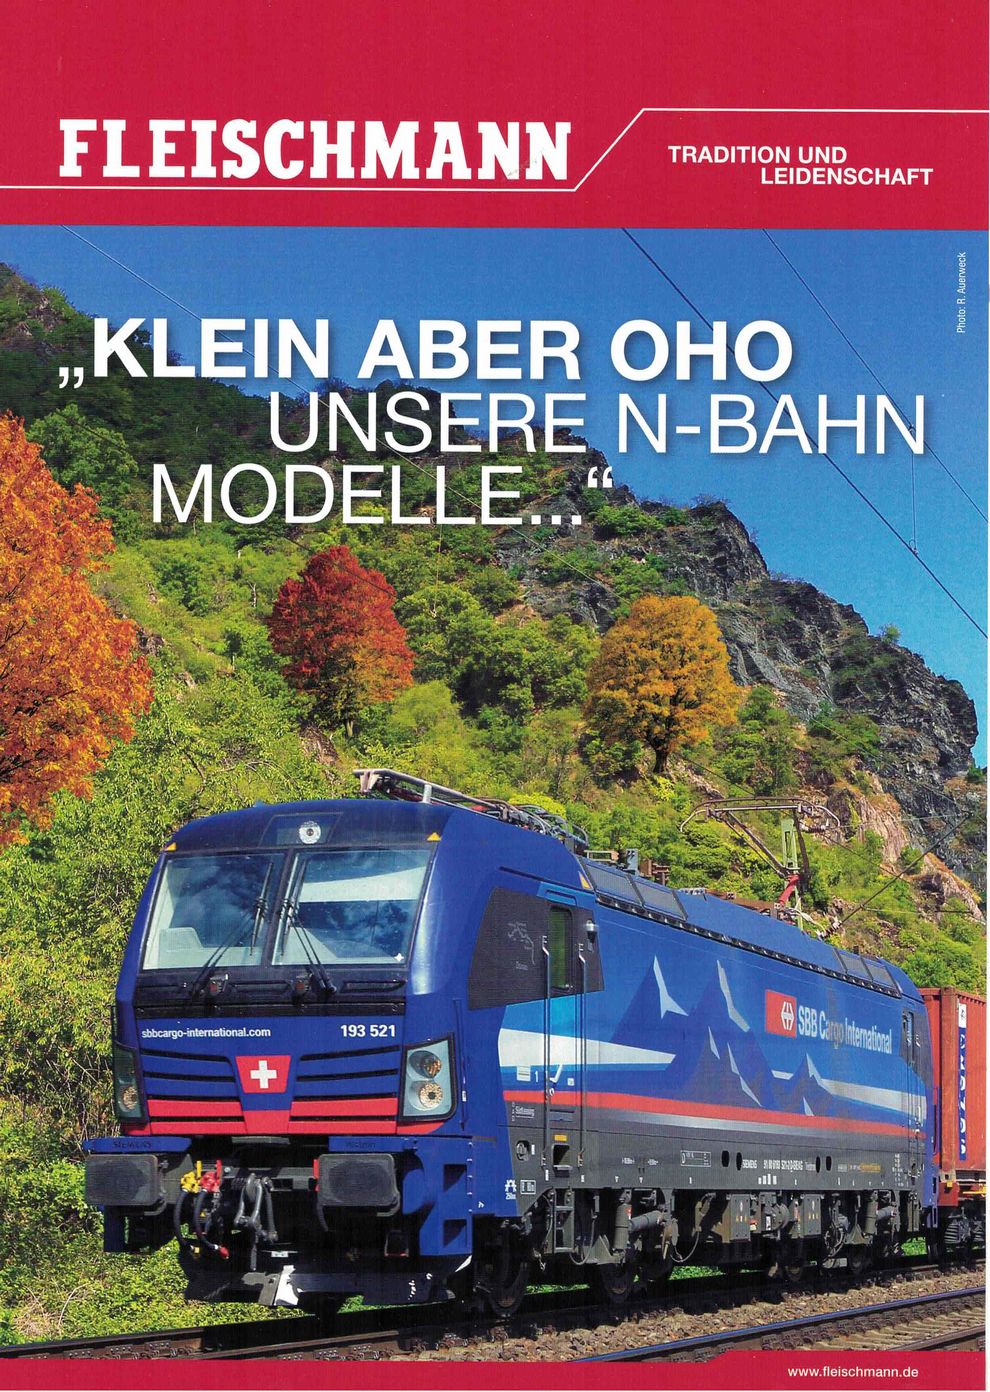 FLEISCHMANN 80688 Broschüre Prospekt Herbst 2020 Klein aber oho N-Bahn - NEU